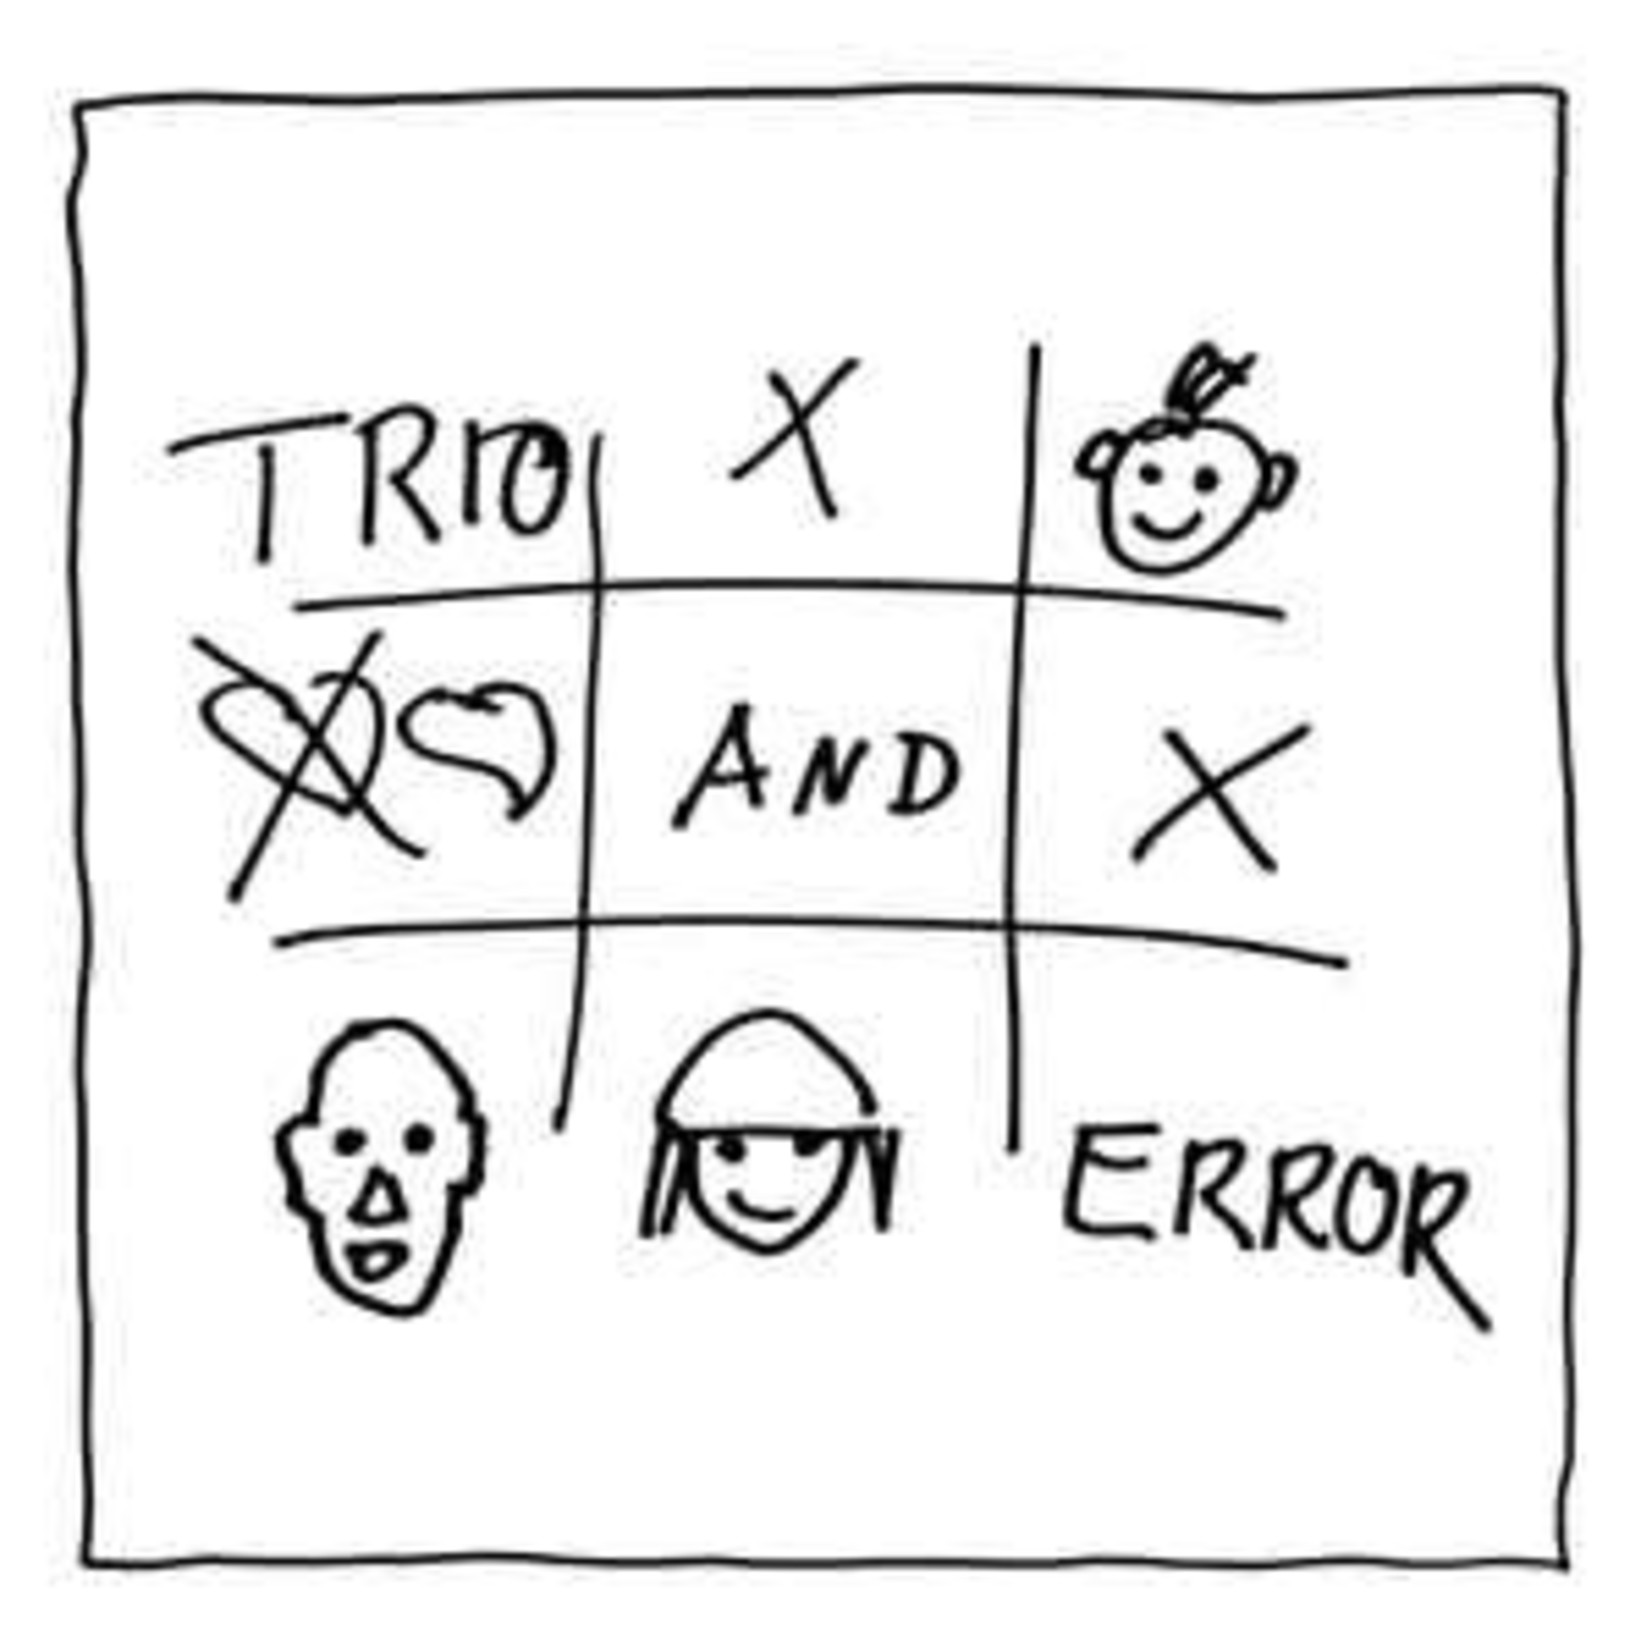 [Discontinued] Trio - Trio & Error